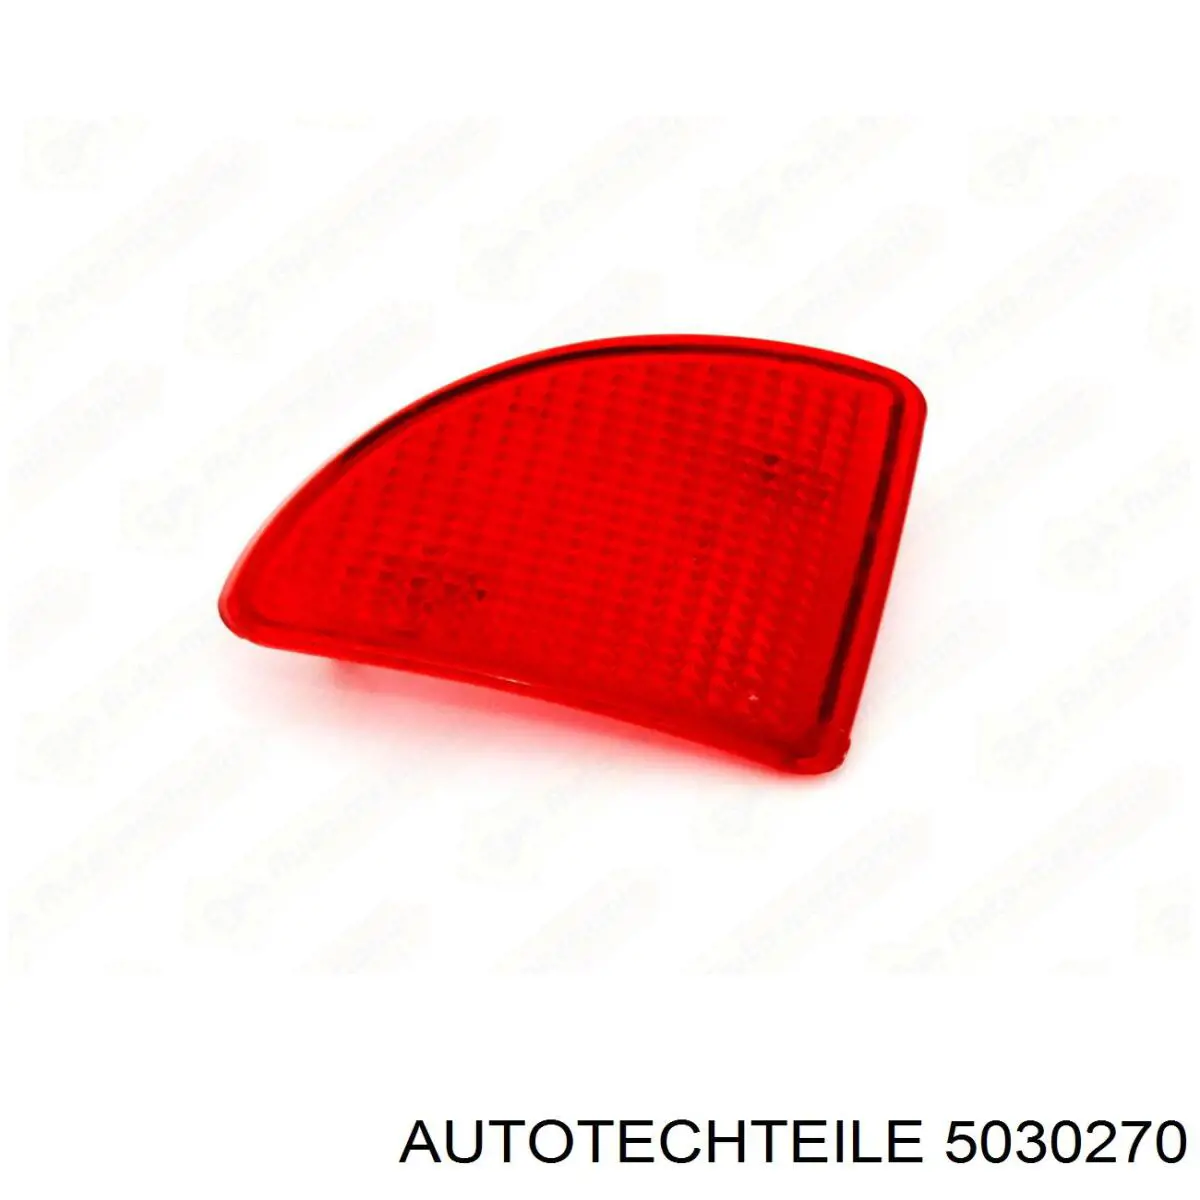 503 0270 Autotechteile retrorrefletor (refletor do pára-choque traseiro esquerdo)